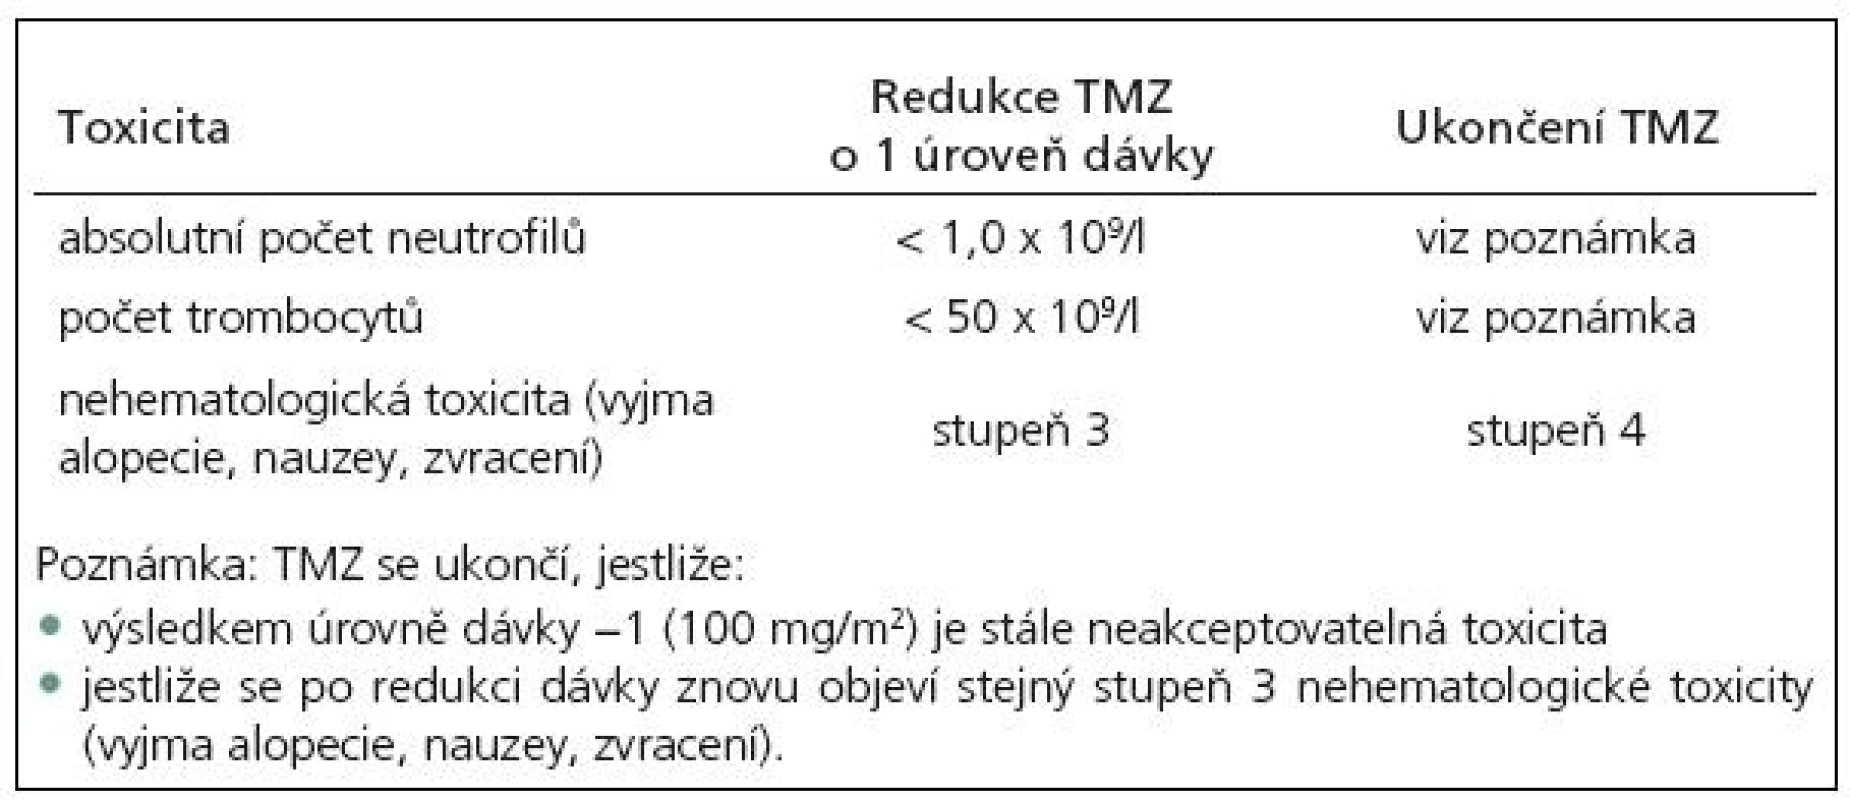 Snížení dávky nebo ukončení podávání přípravku temozolomid (TMZ) během adjuvantní léčby [dle SPC temozolomidu].
